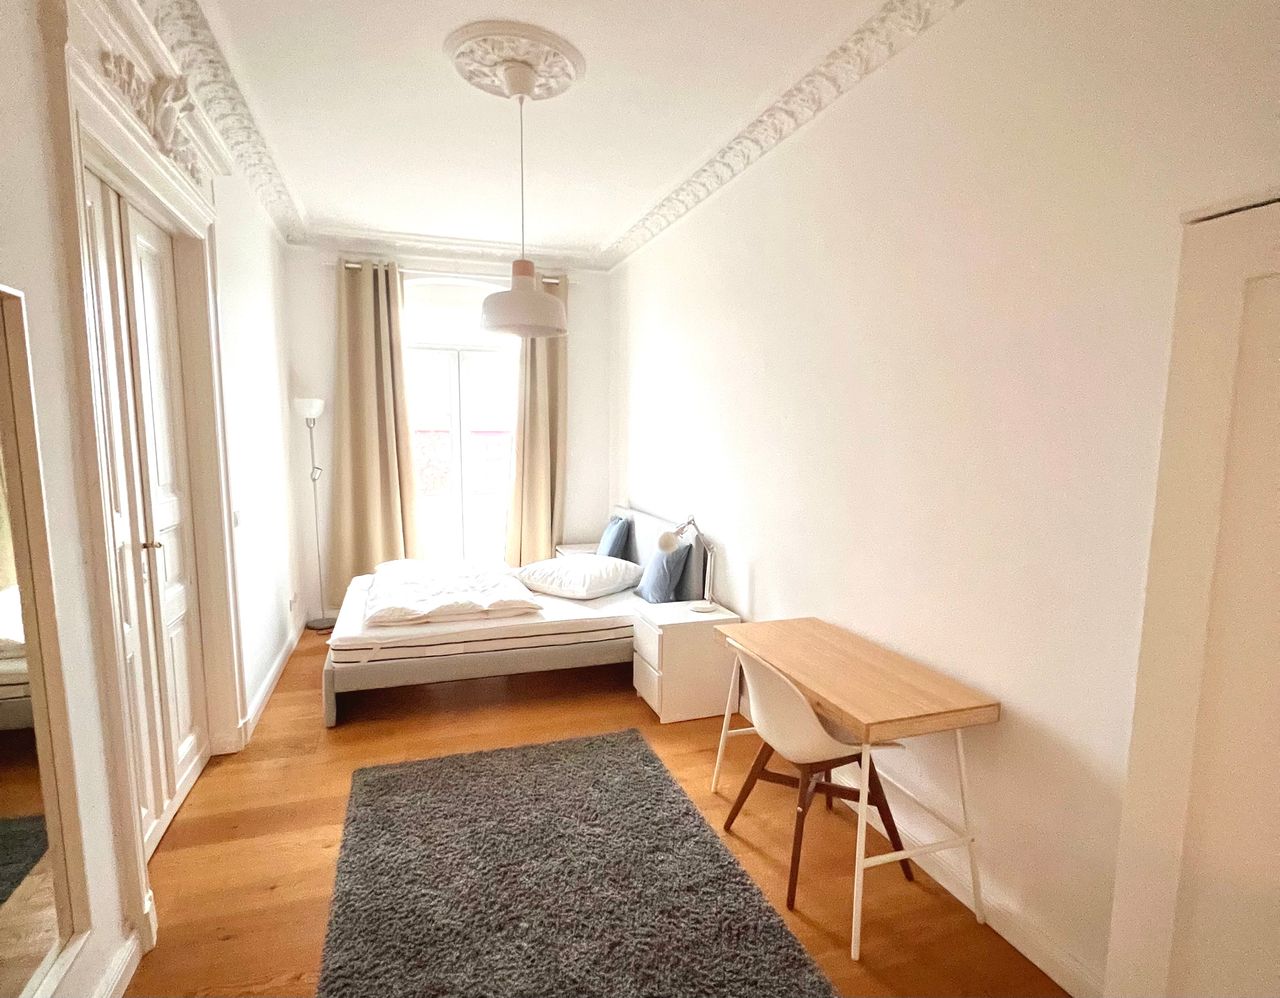 Fashionable apartment (Kreuzberg)